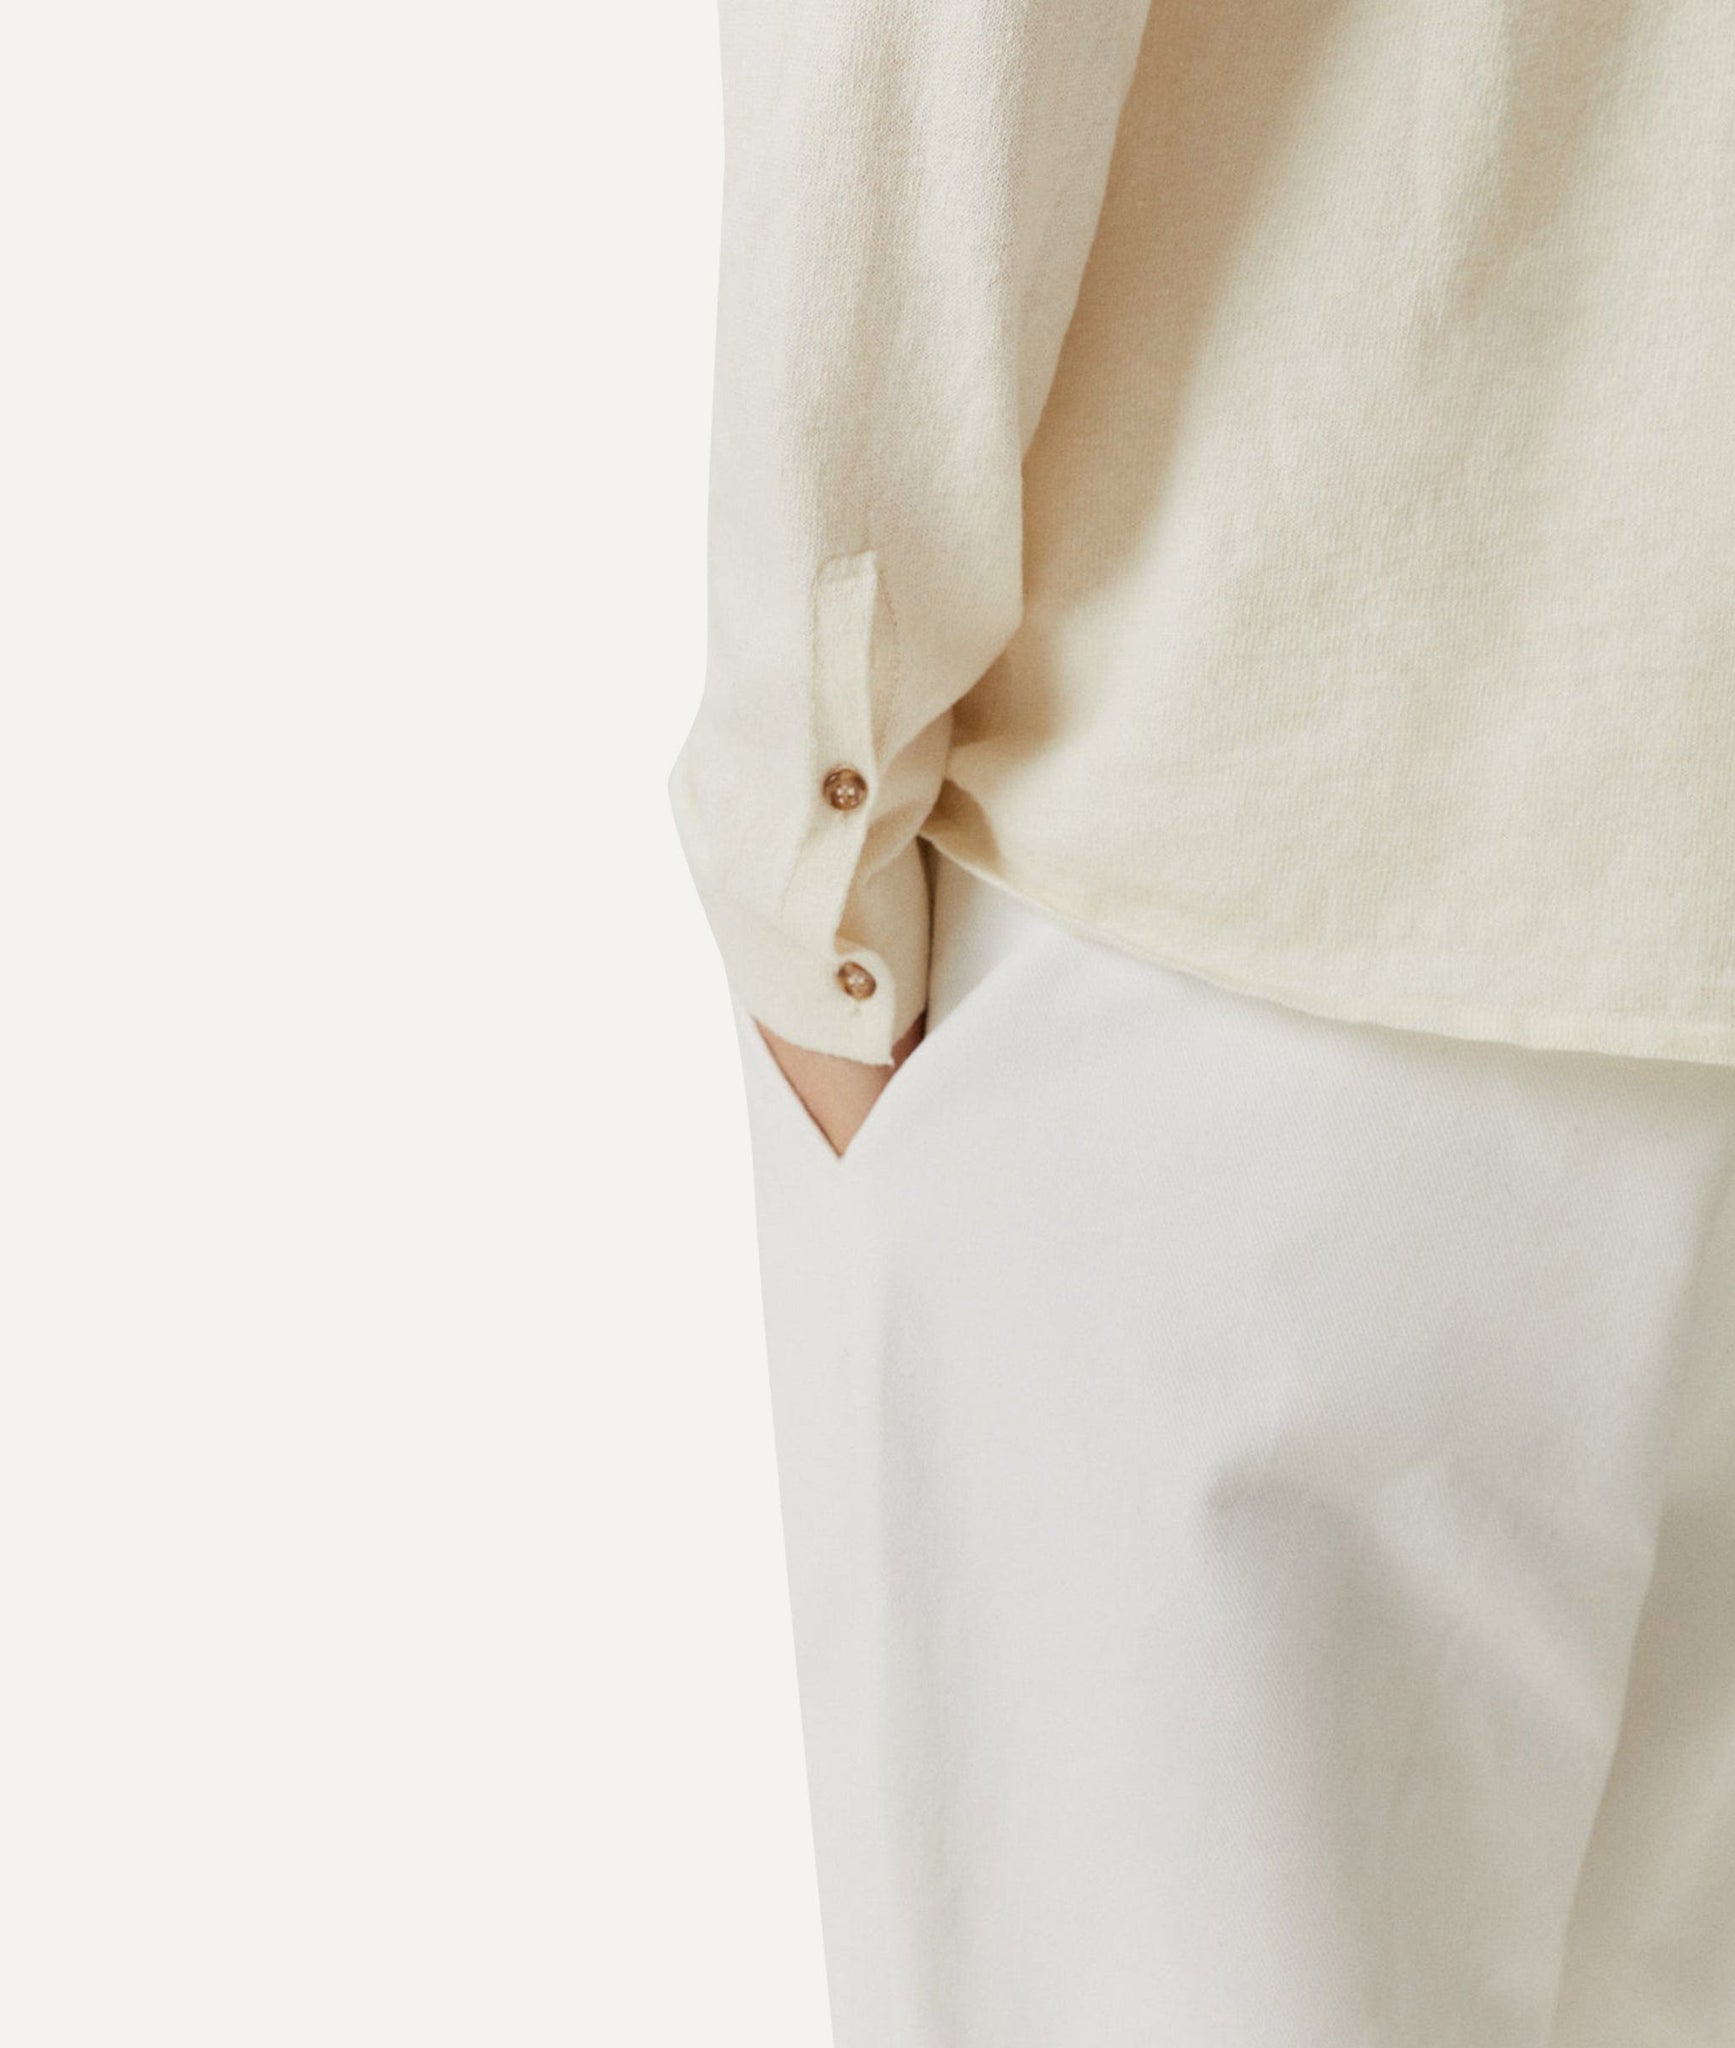 The Linen Cotton Knit Shirt